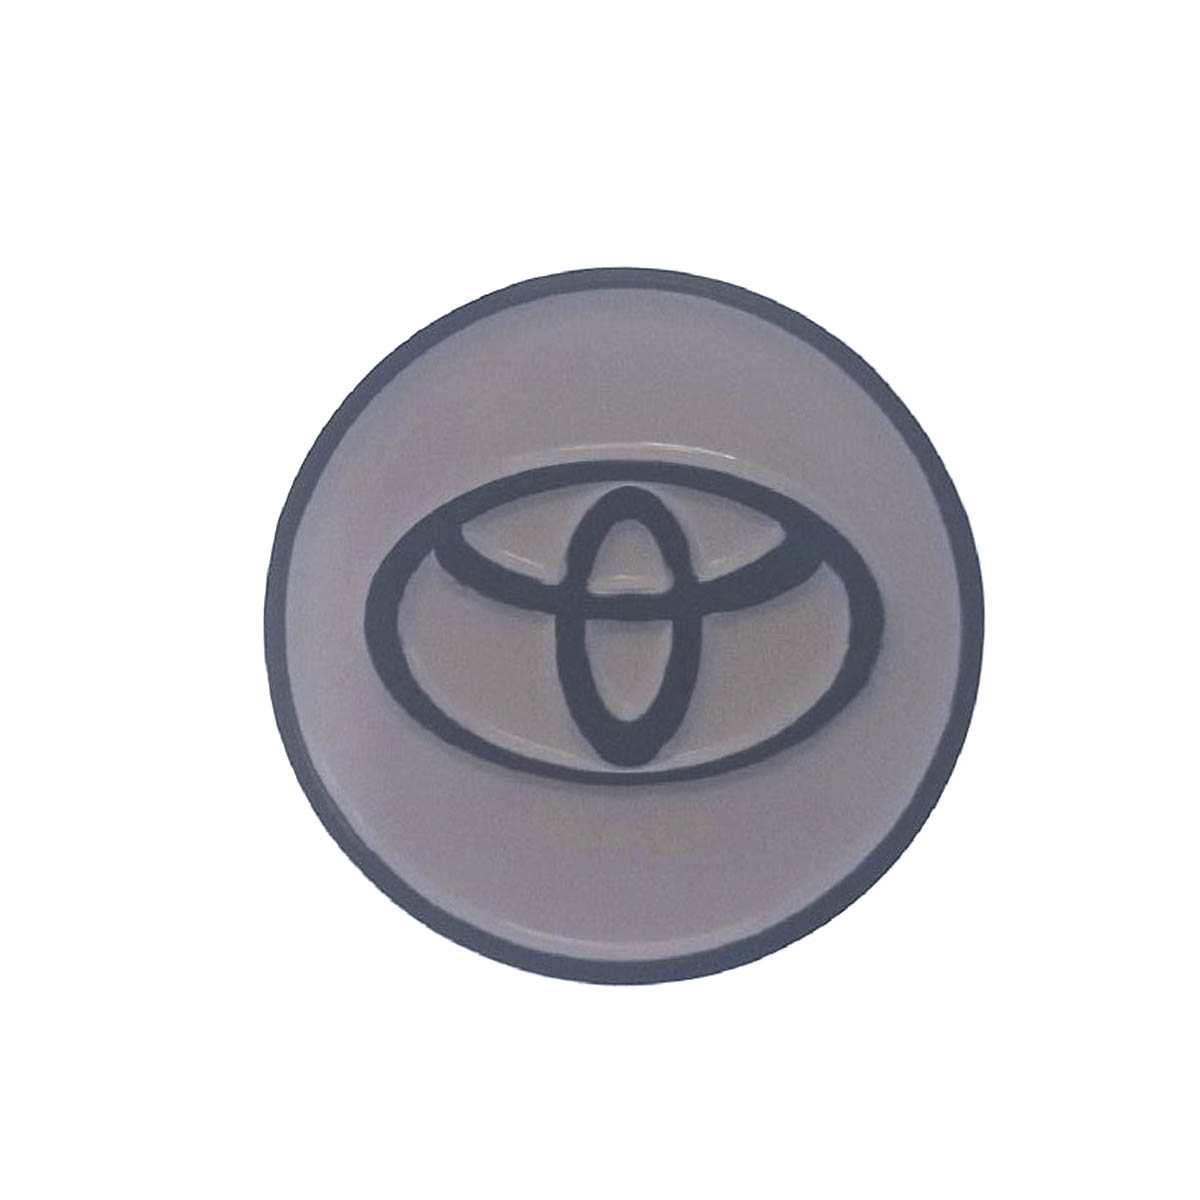 Металлическая пластина круглая на клеевой основе для магнитных держателей смартфонов, рисунок Toyota